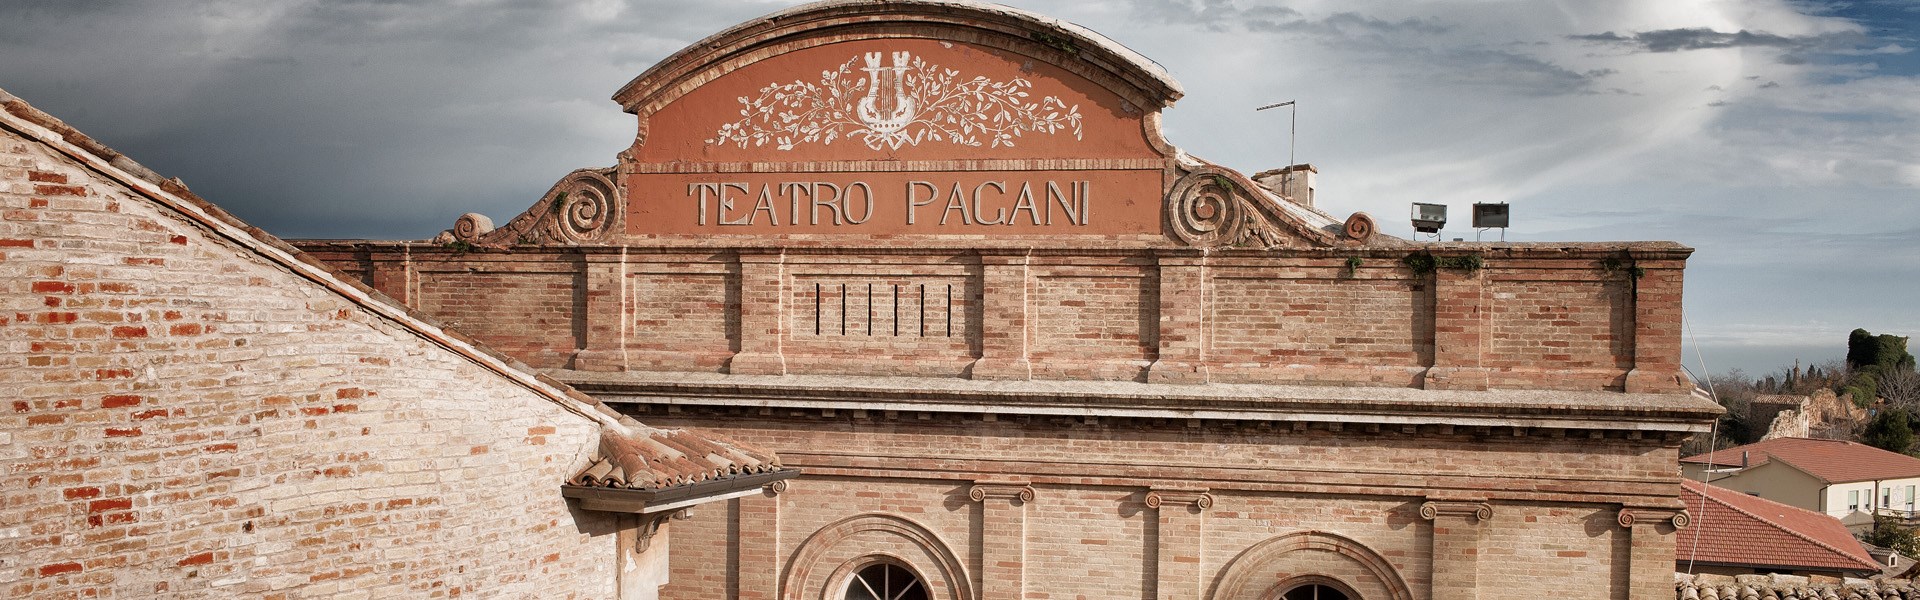 Monterubbiano - Teatro Pagani